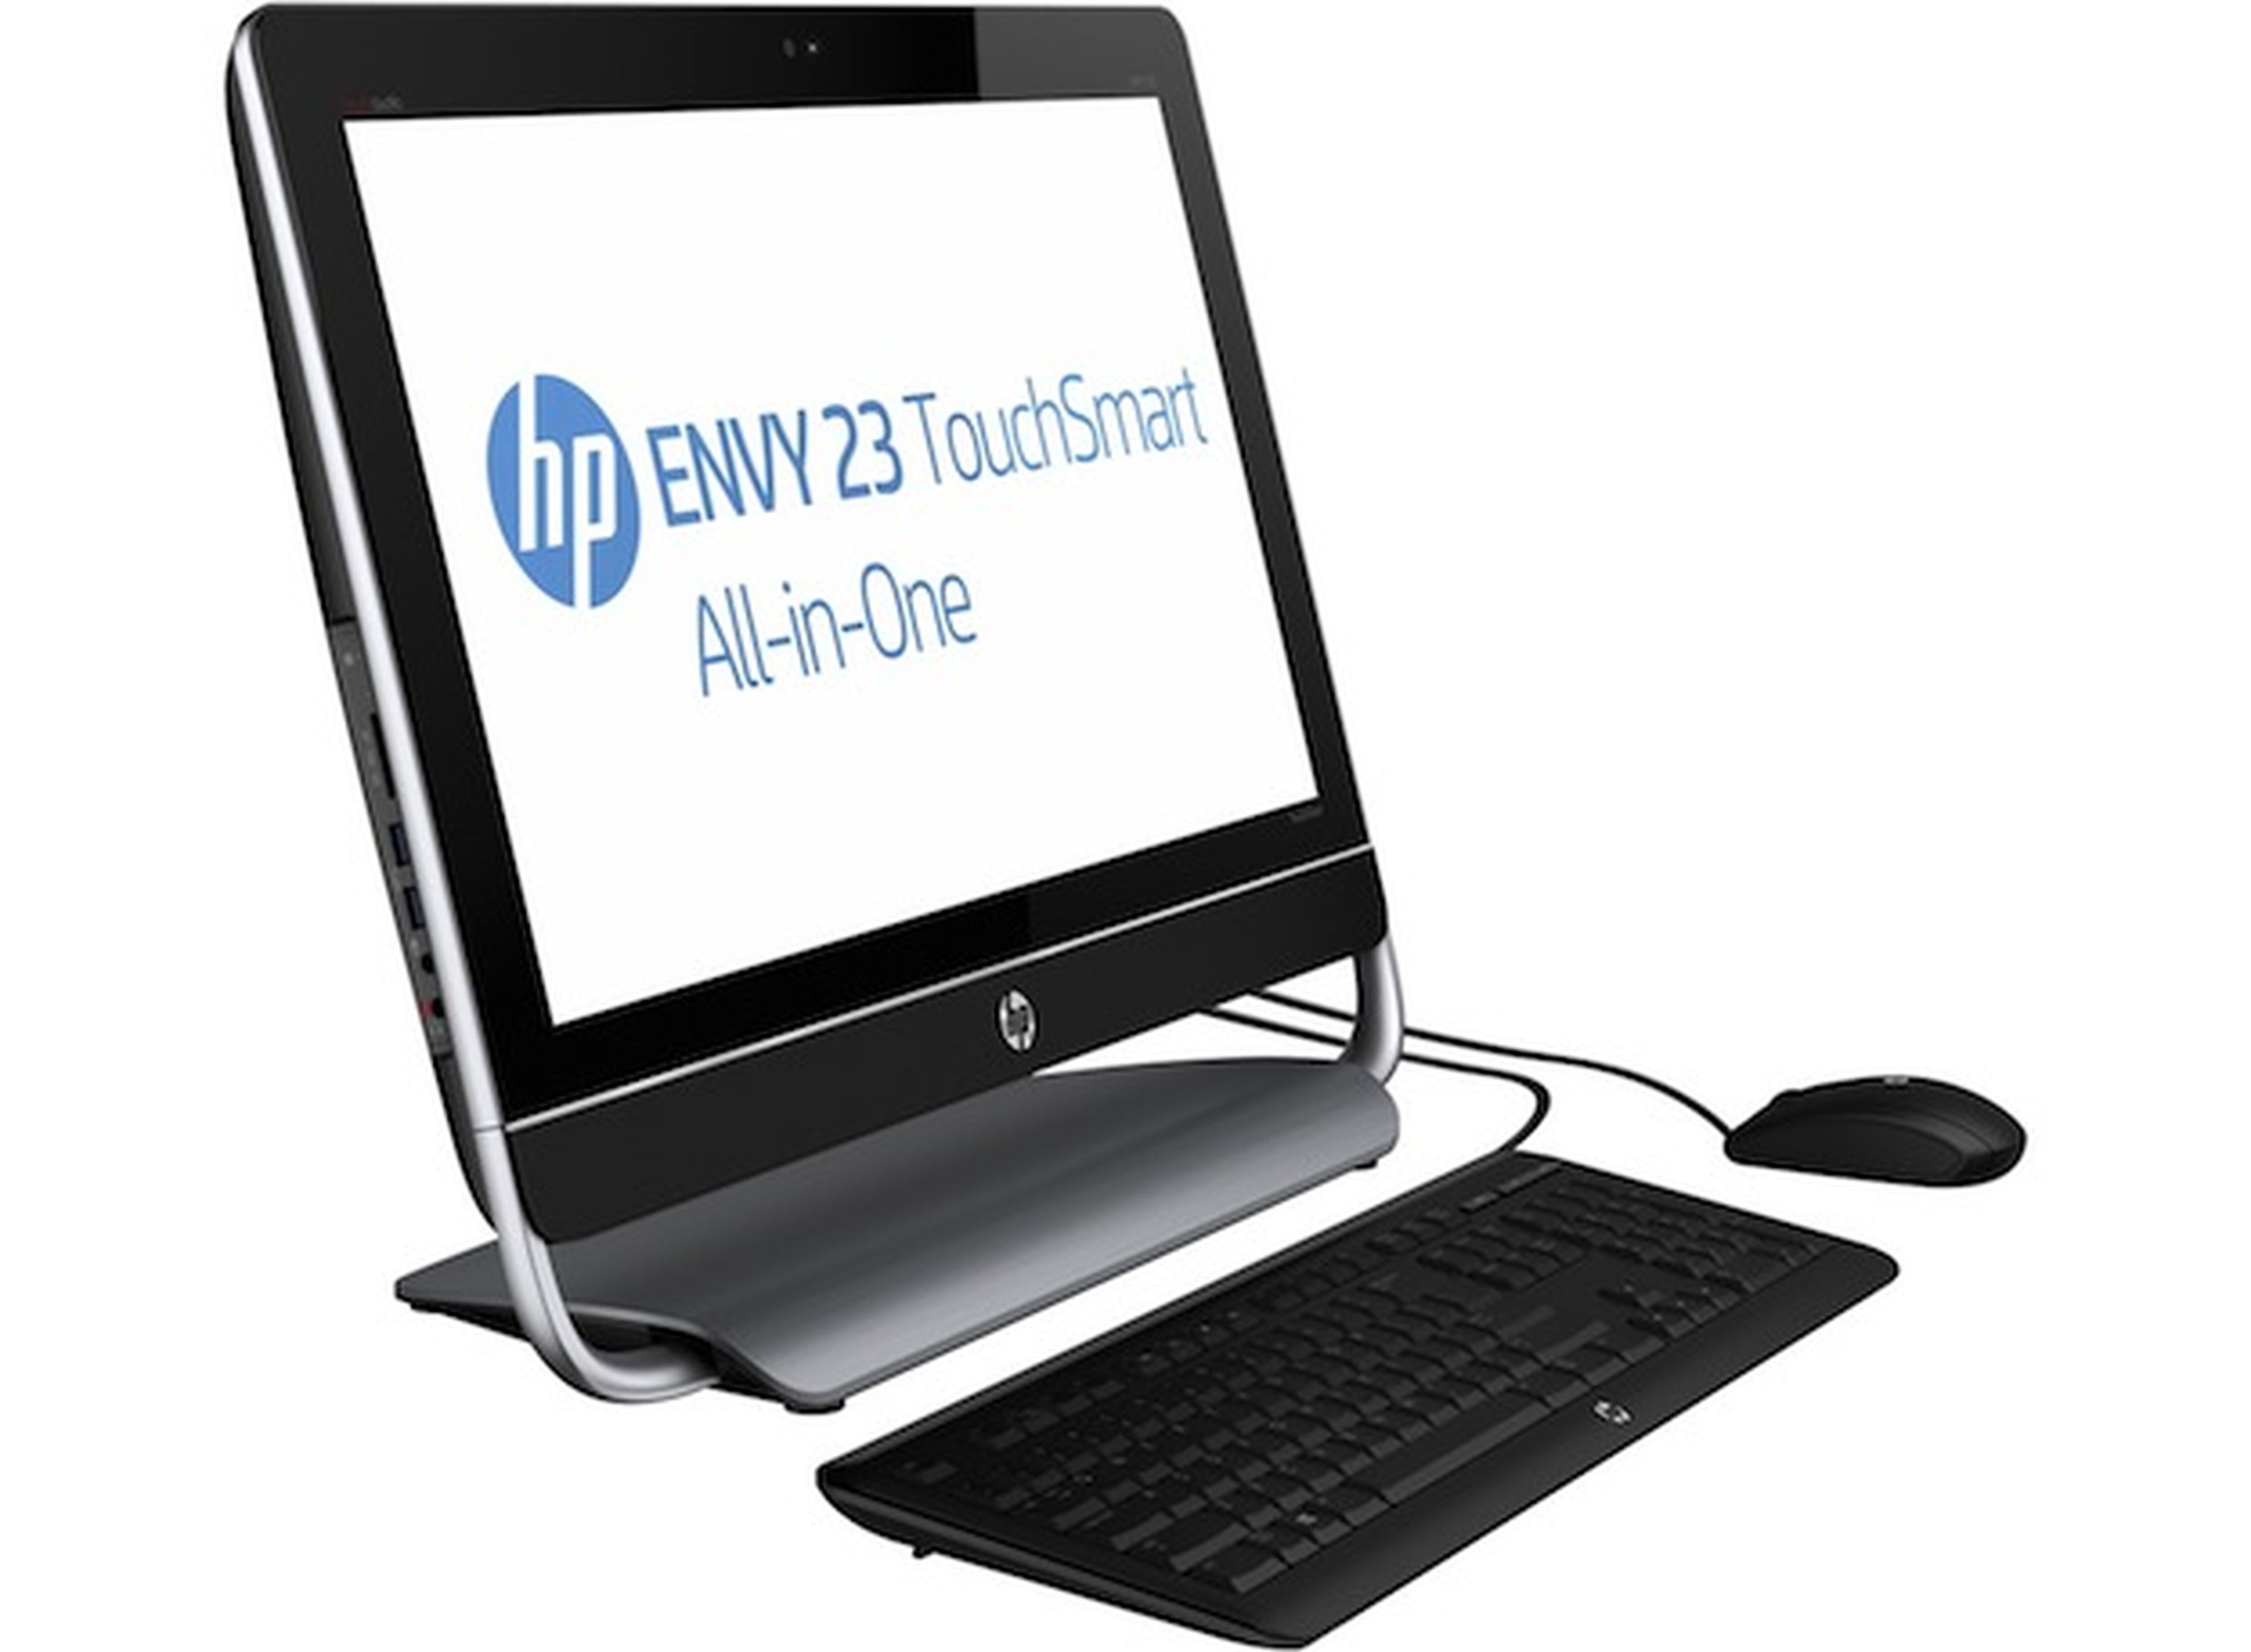 HP Envy 23-d201es TouchSmart AIO